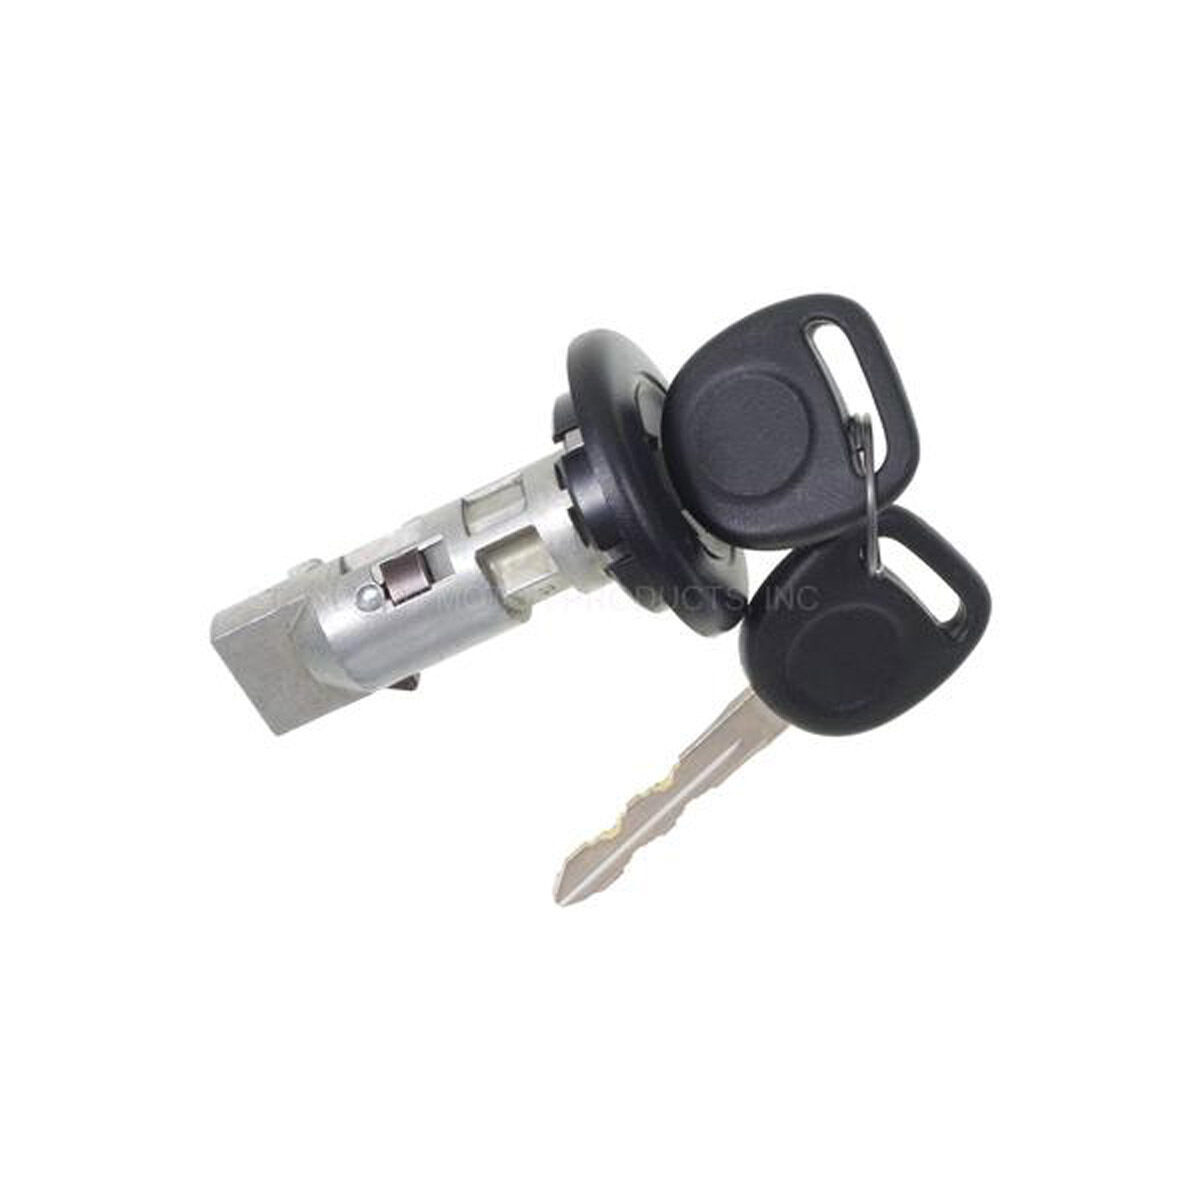 03-07 H2 01-06 Silverado Sierra Escalade Tahoe Ignition Lock Cylinder w/ Key STD - $54.20